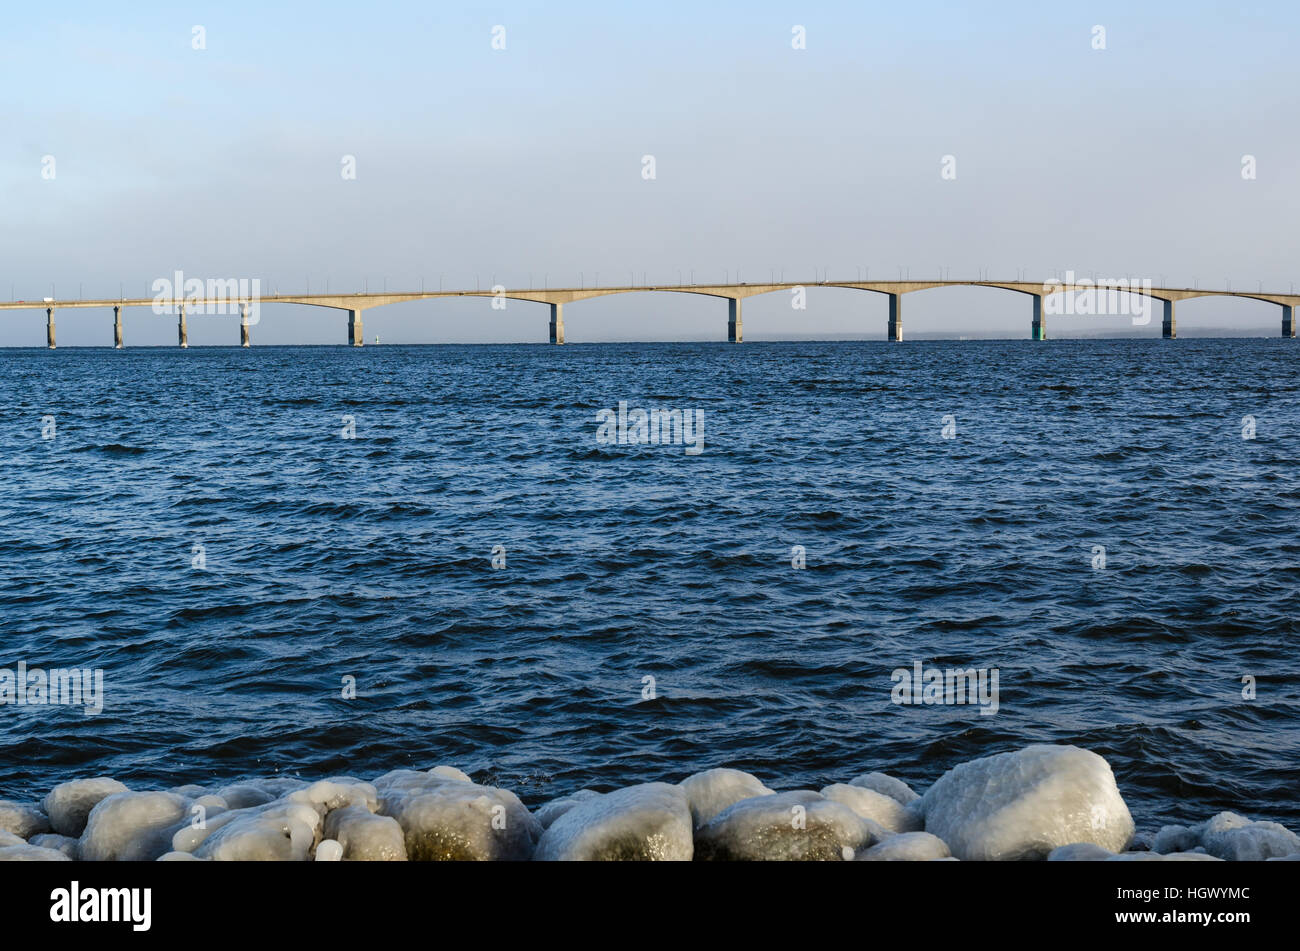 Winter Blick auf Öland-Brücke vom Festland Schweden. Die Brücke verbindet die schwedische Insel Öland mit dem Festland Schweden Stockfoto